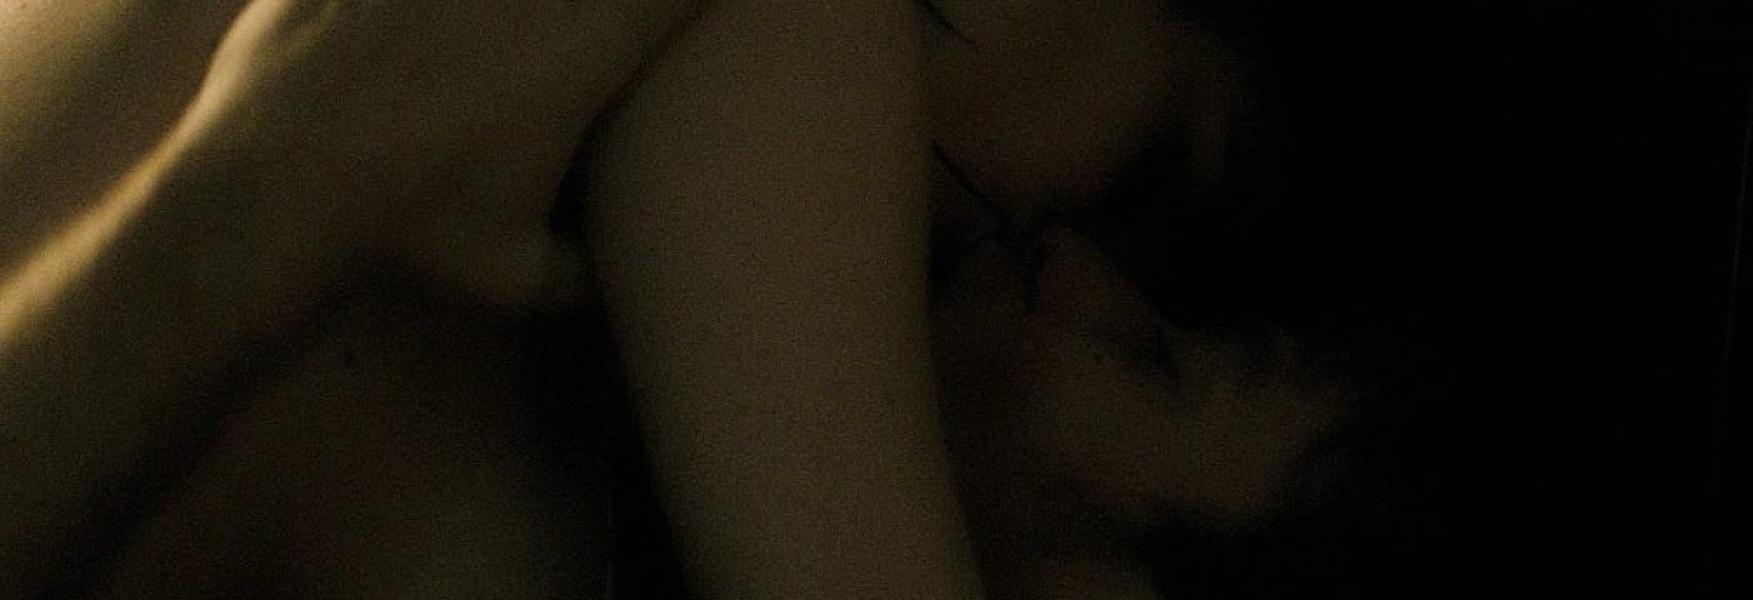 Γυμνές φωτογραφίες της Eva Green 52